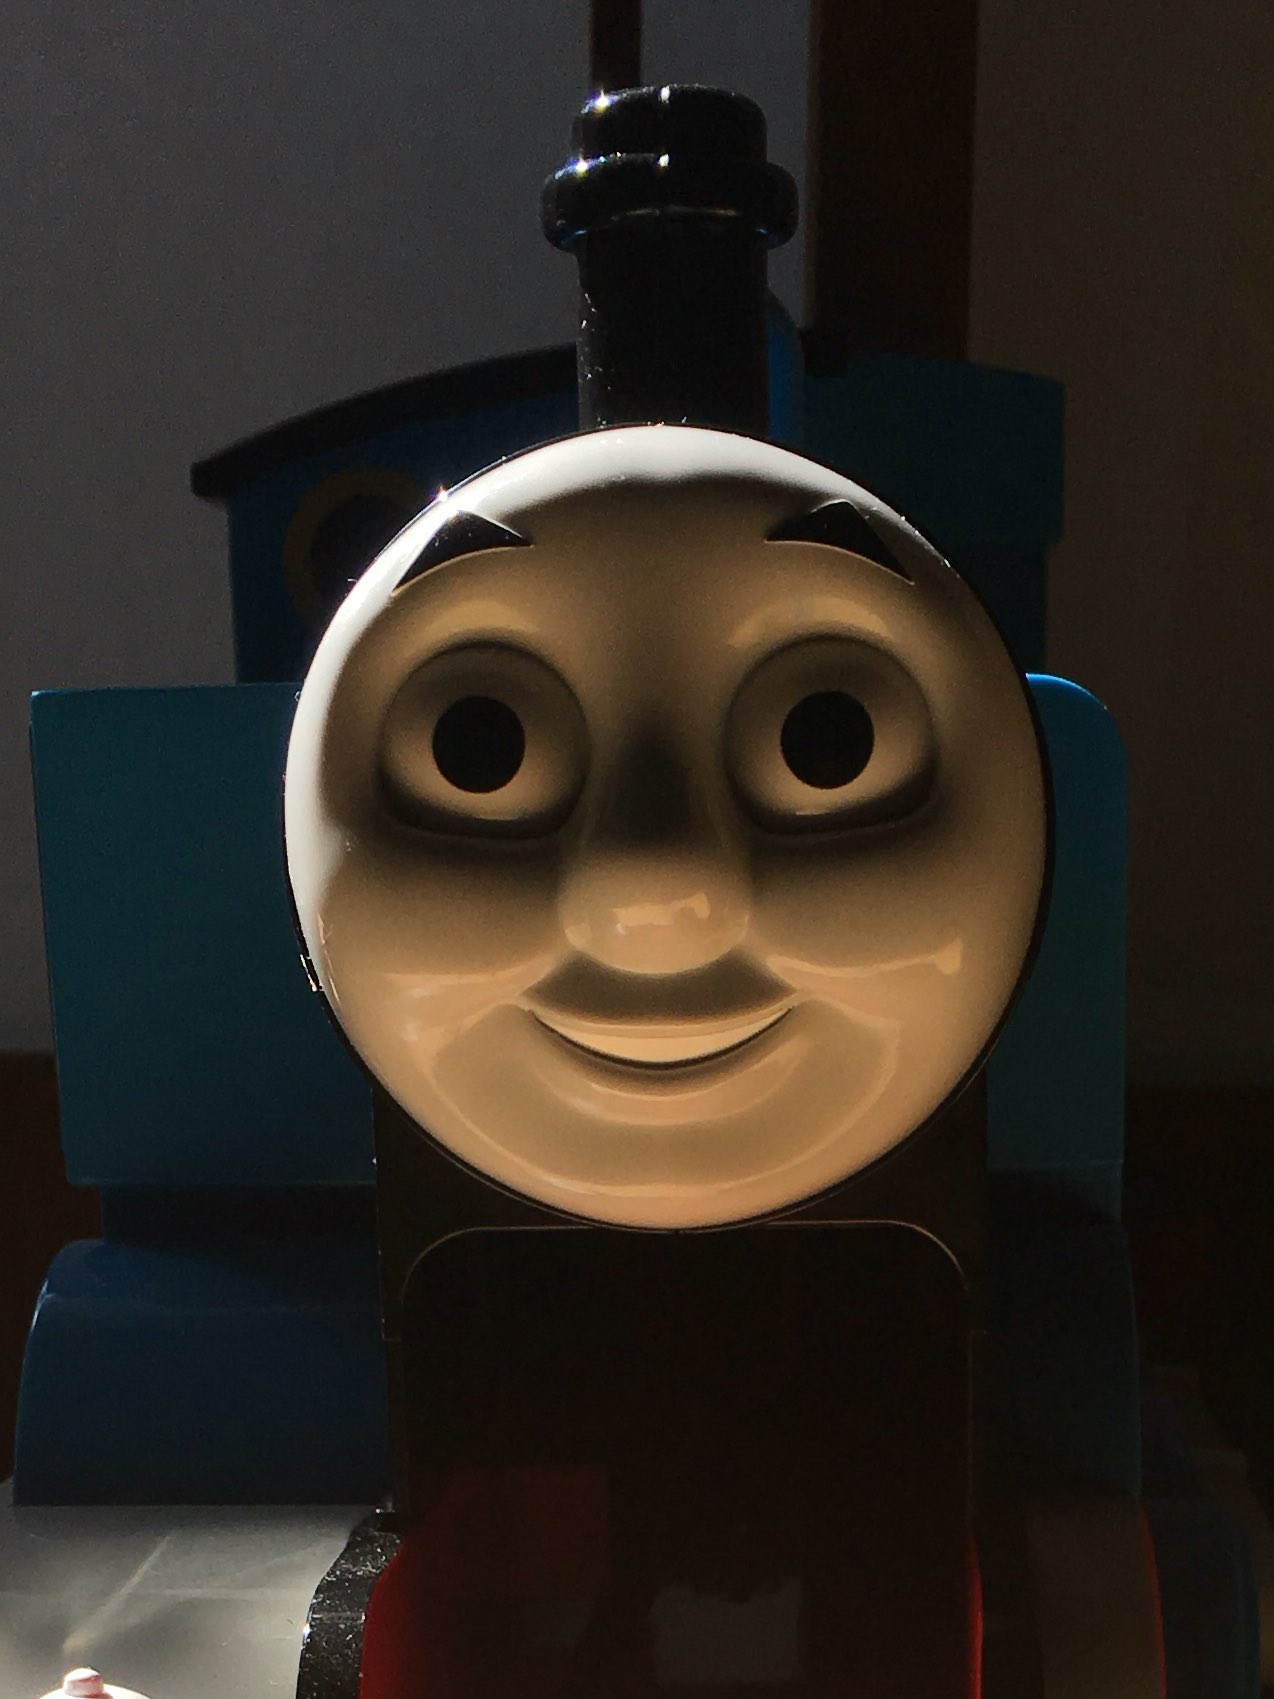 悪に満ちた機関車トーマスが怖いｗ暗がりに潜み かすかな微笑みに闇を感じる 話題の画像プラス